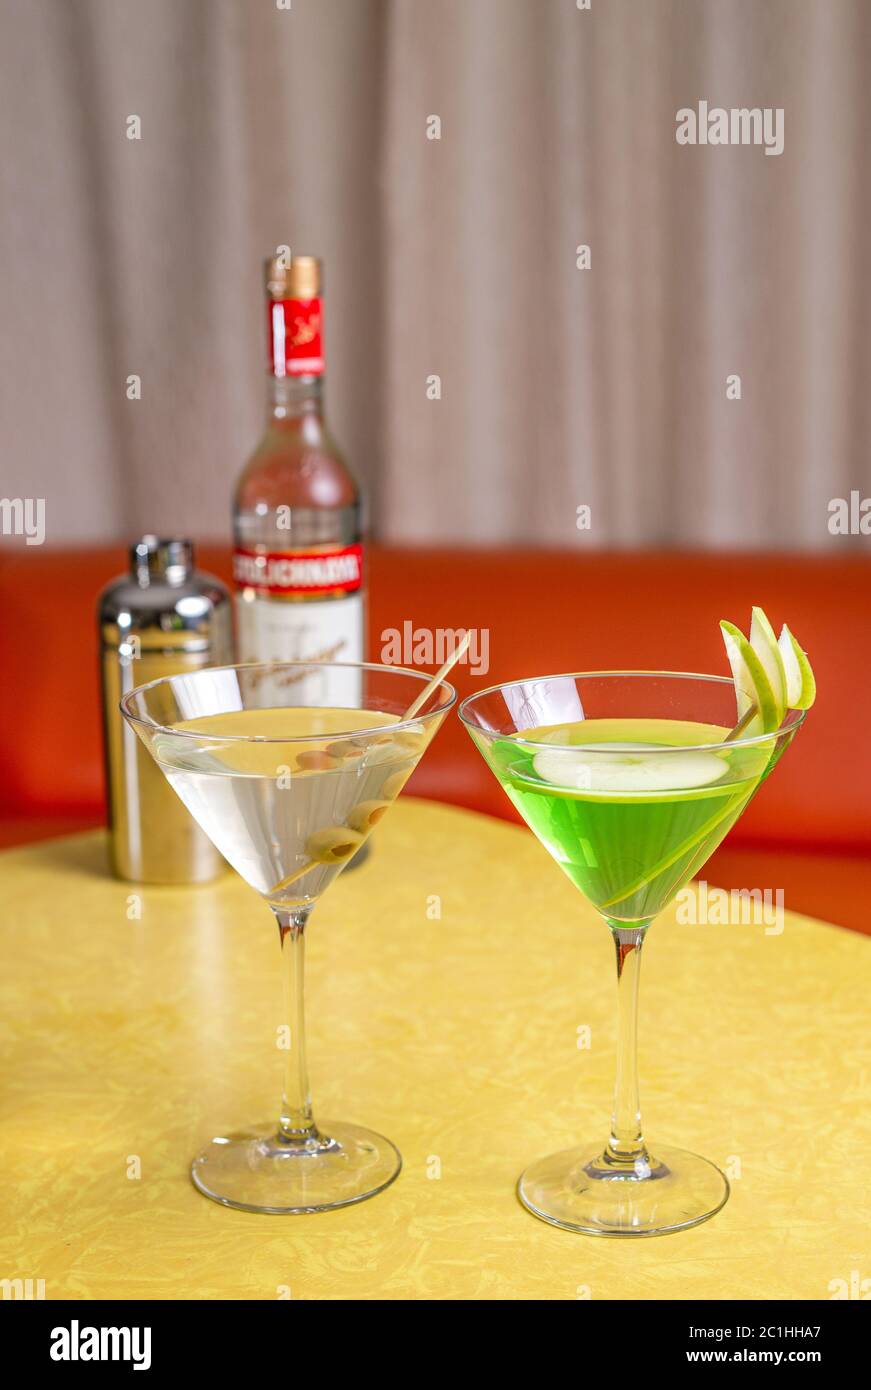 Cocktail Martini preparati con vodka Stolichnaya su tavolo giallo d'annata Foto Stock